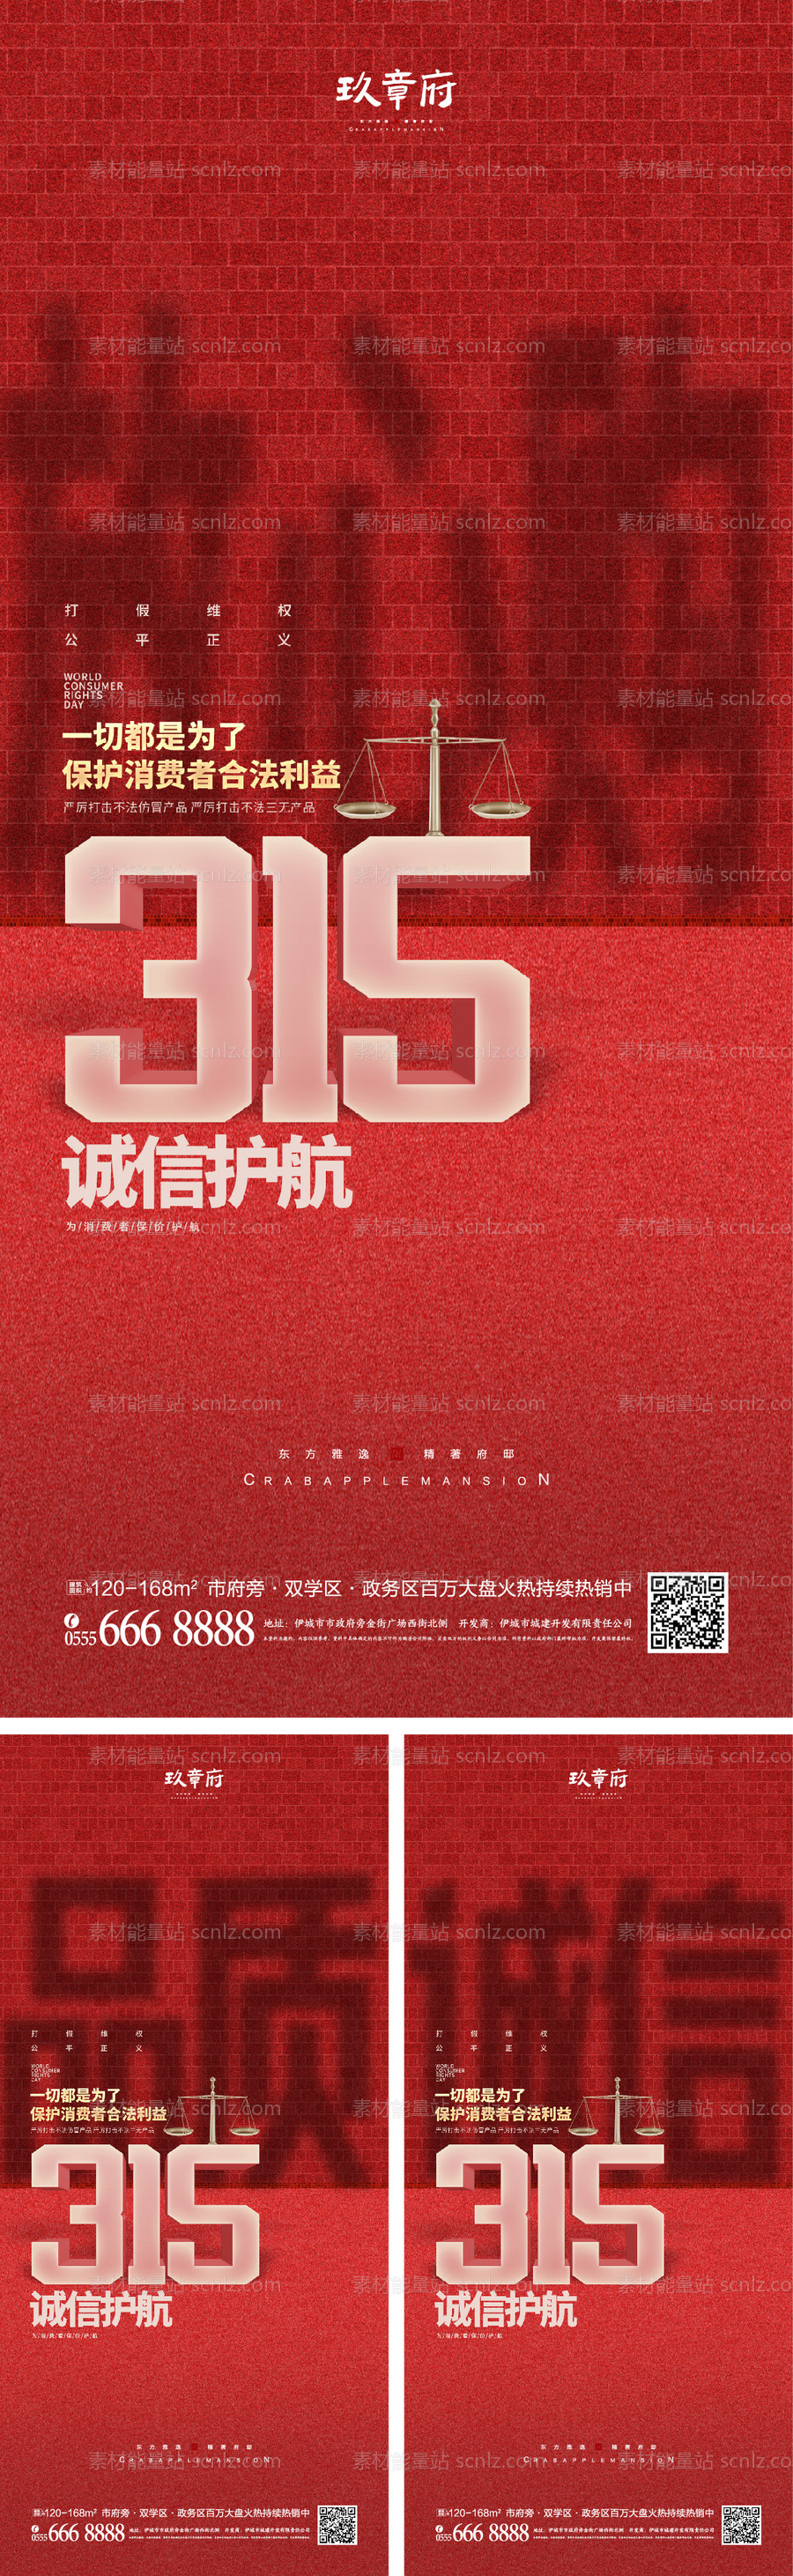 素材能量站-315消费者权益日海报